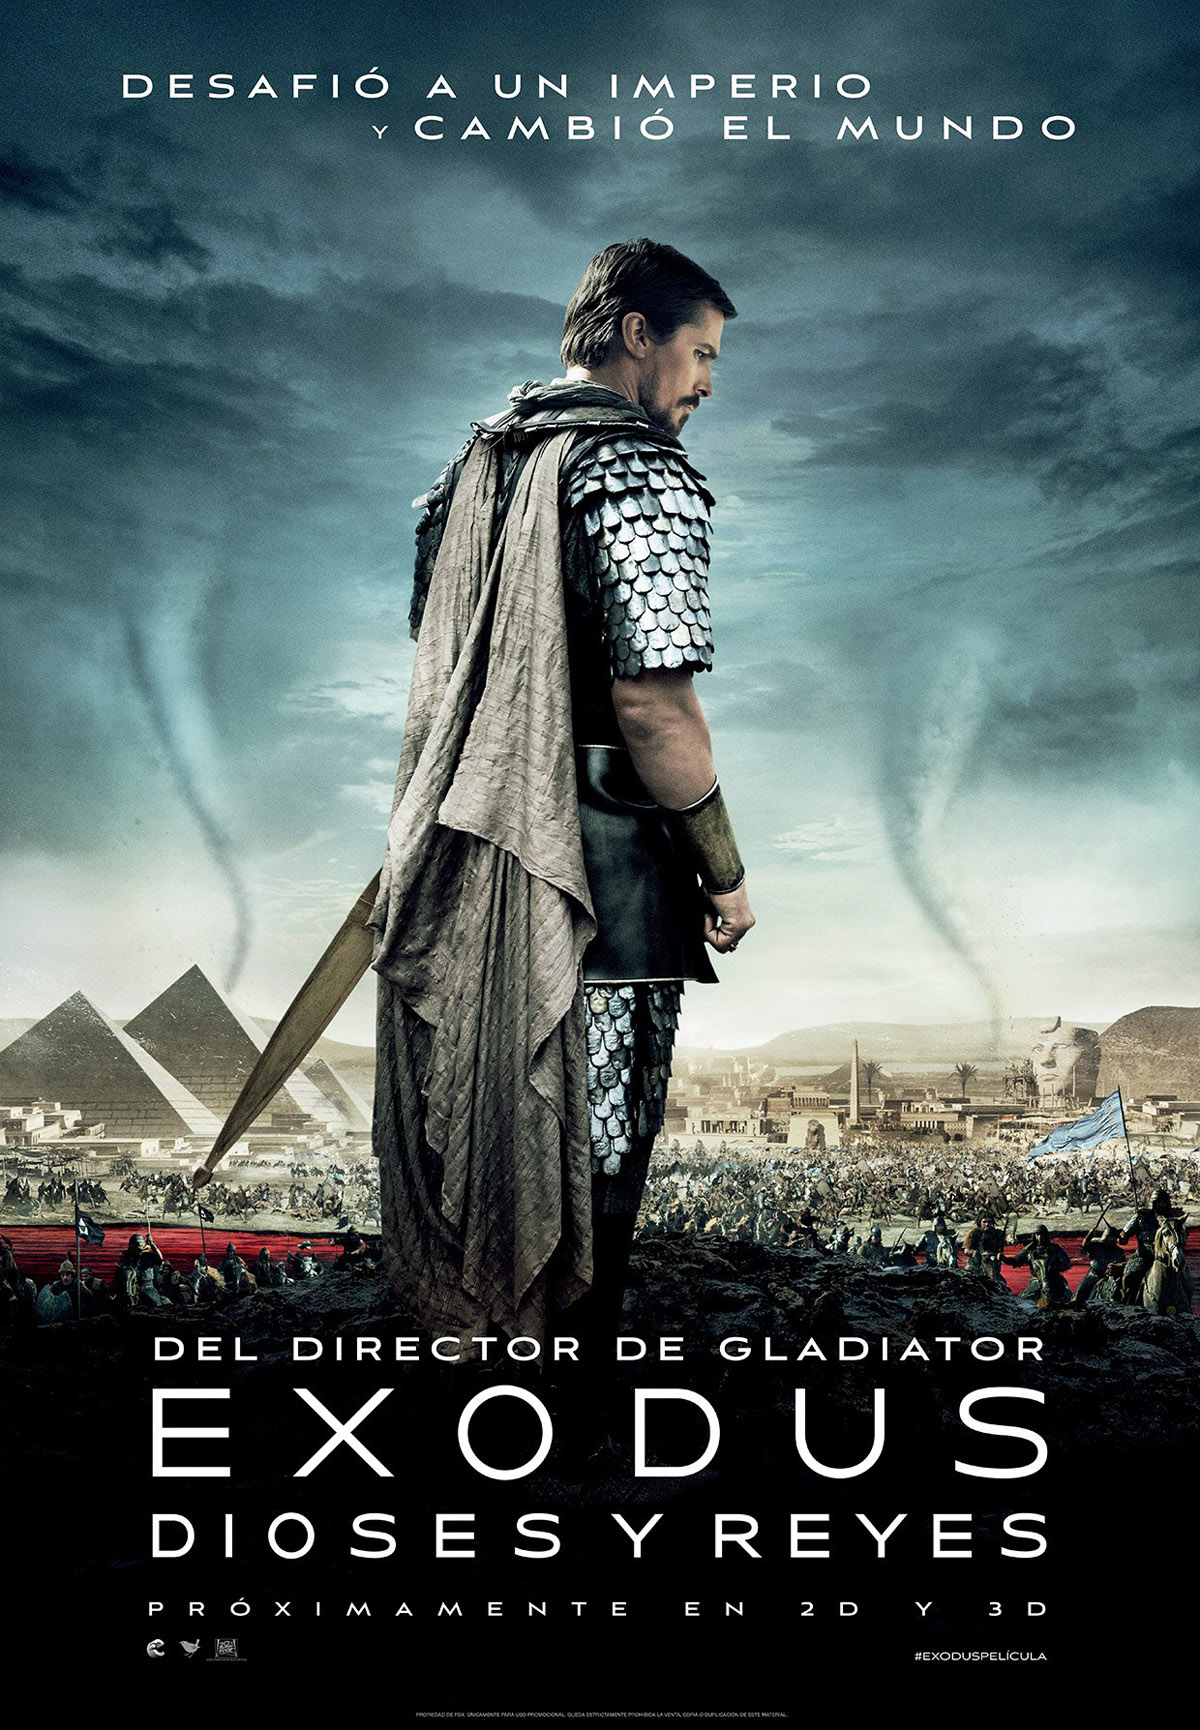 Crítica de la película Exodus realizada por Ridley Scott y con Christian Bale